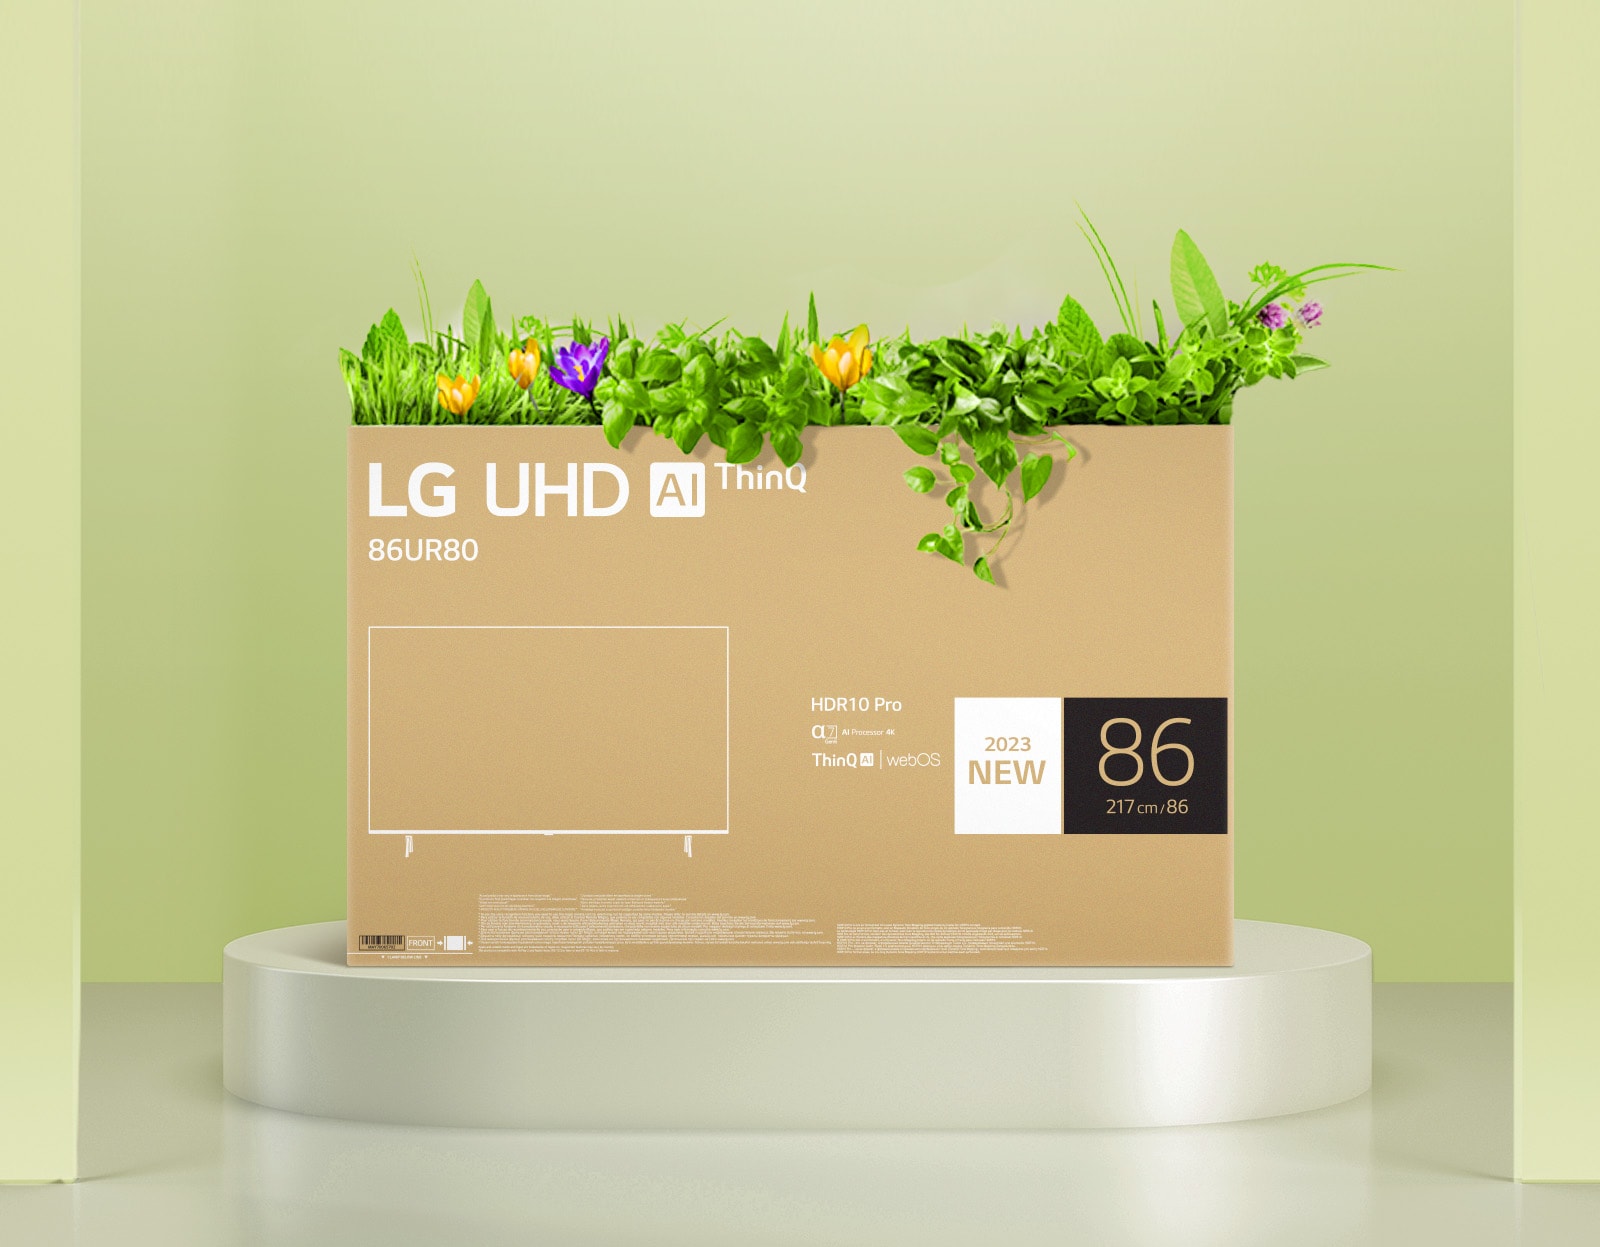 LG UHD TV:s omdesignade förpackning använder enfärgstryck och en återvinningsbar låda.